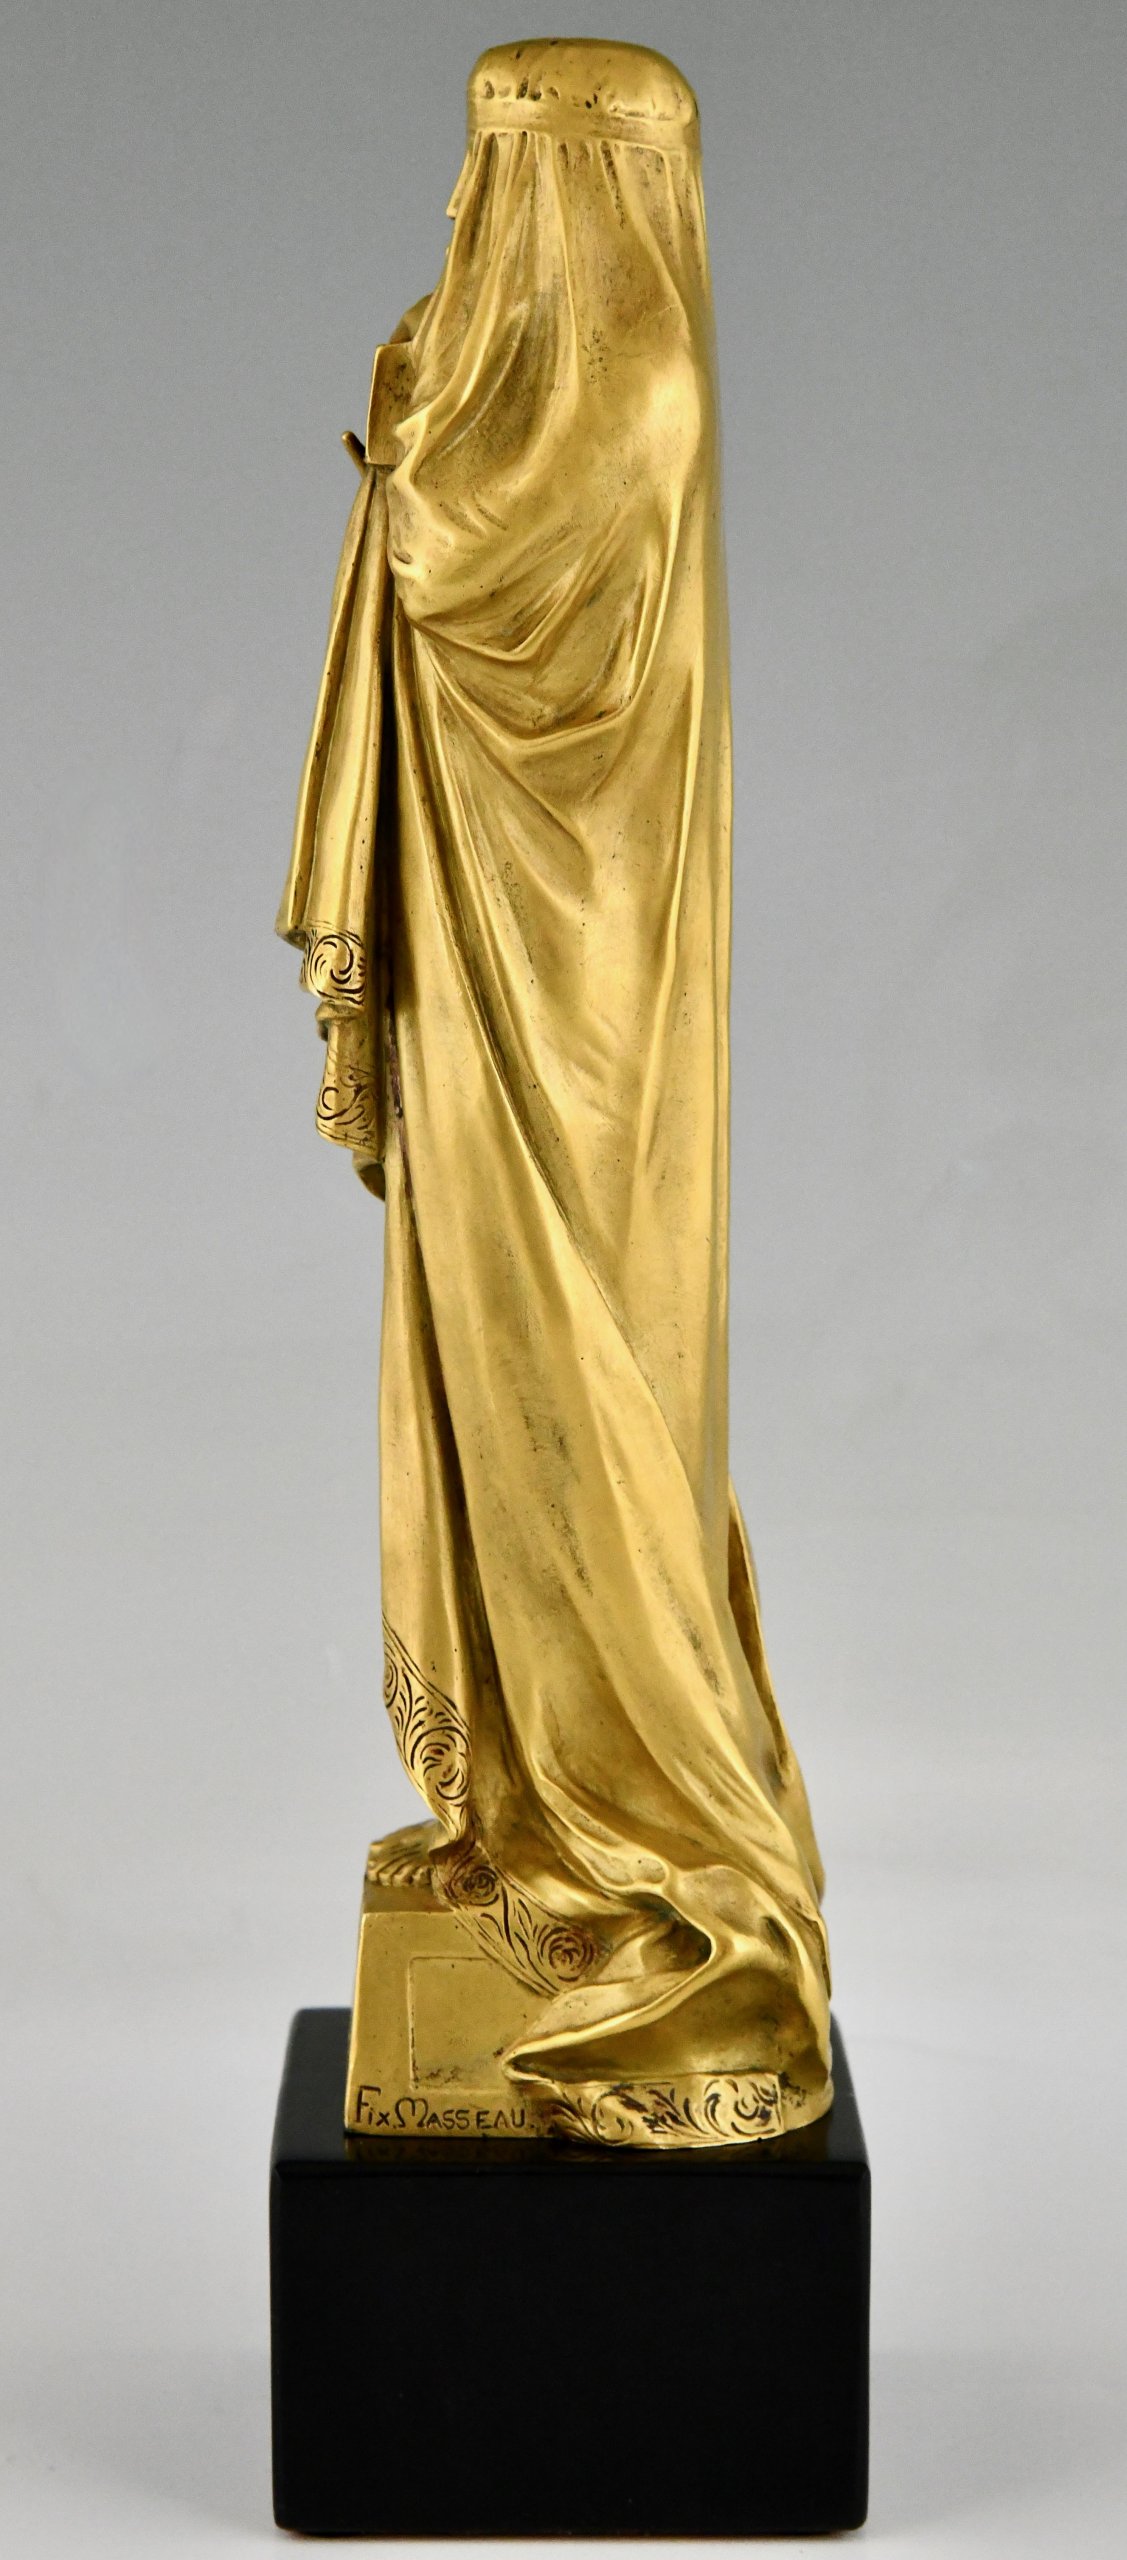 Art Nouveau bronzen sculptuur naakt met juwelenkist, Le Secret